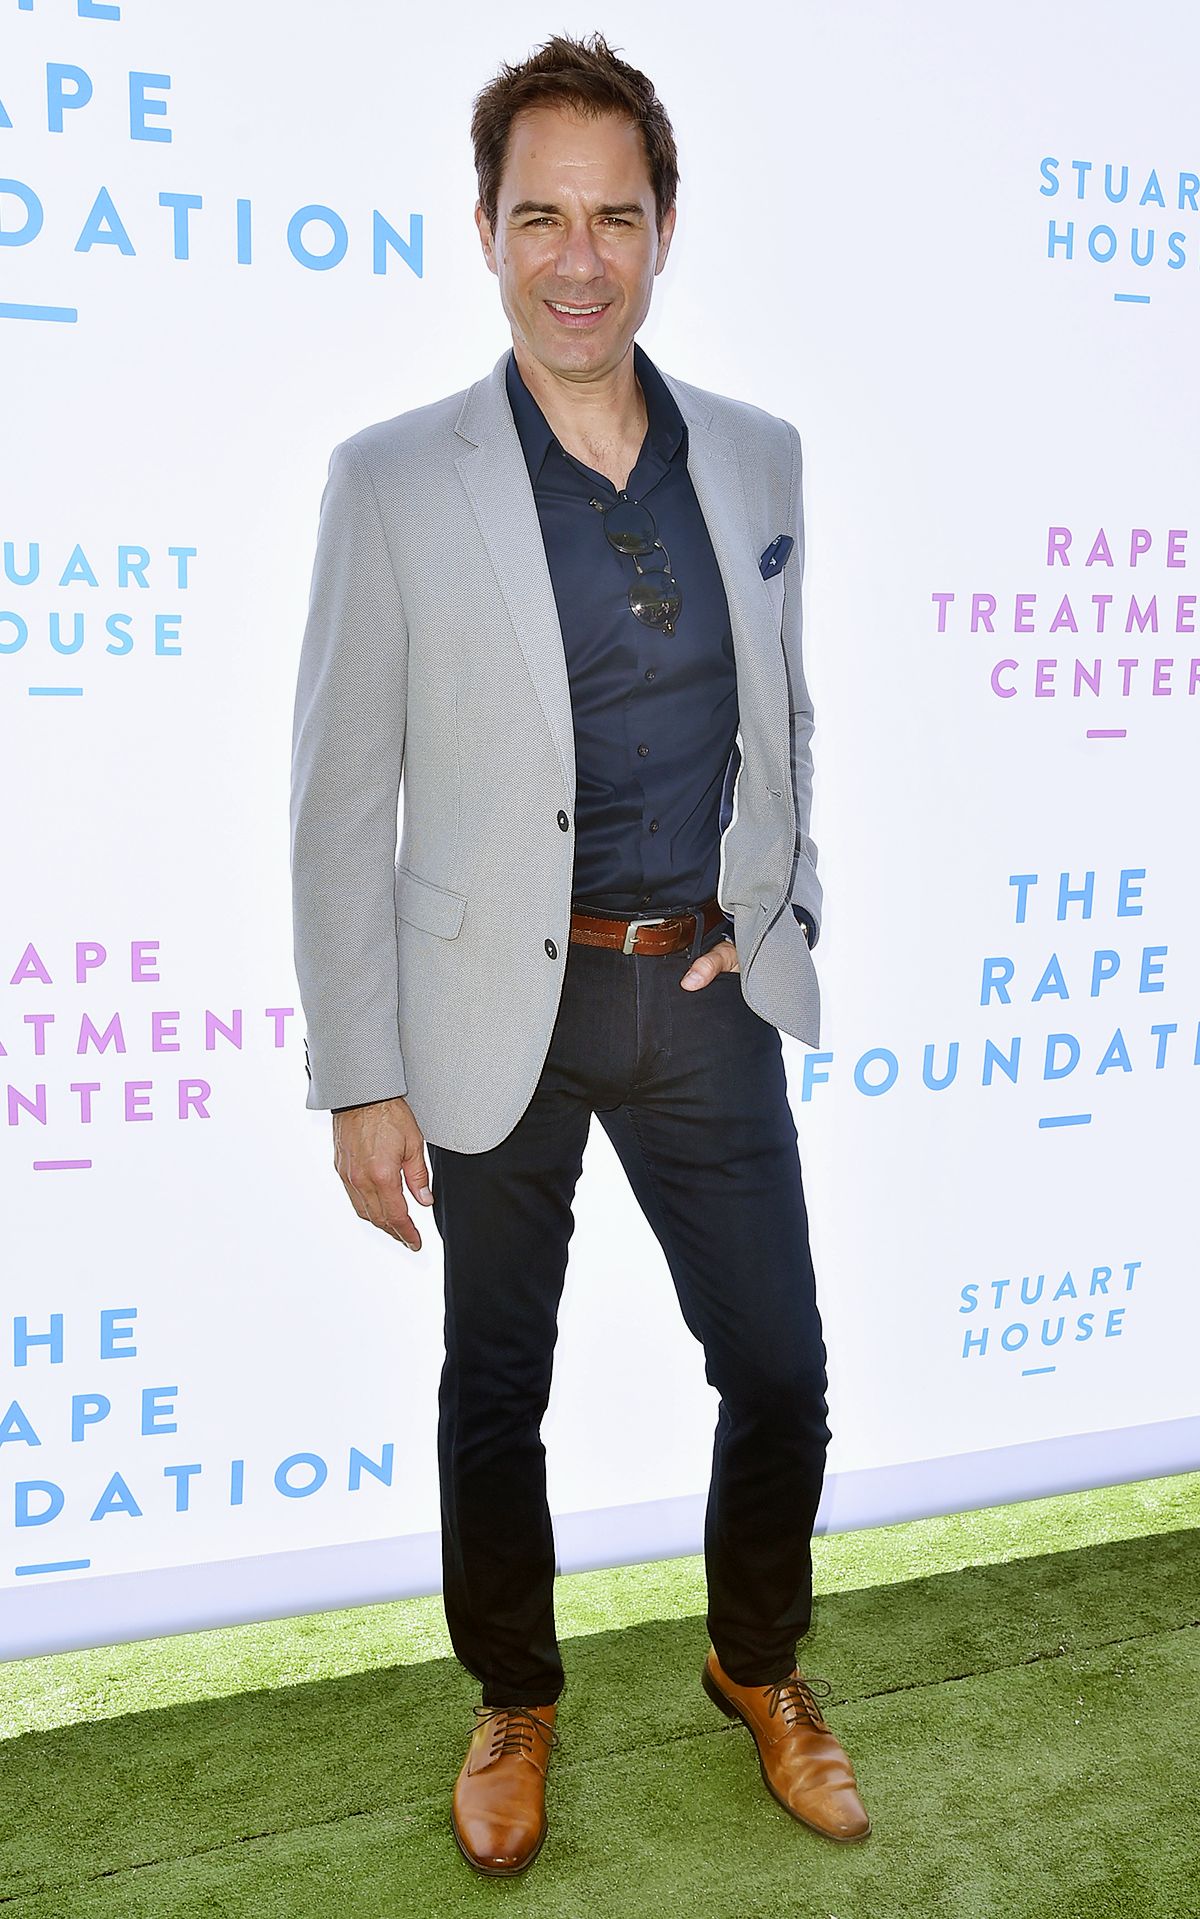 Эрик Маккормак на благотворительном бранче фонда The Rape Foundation, 7 октября 2018 г.